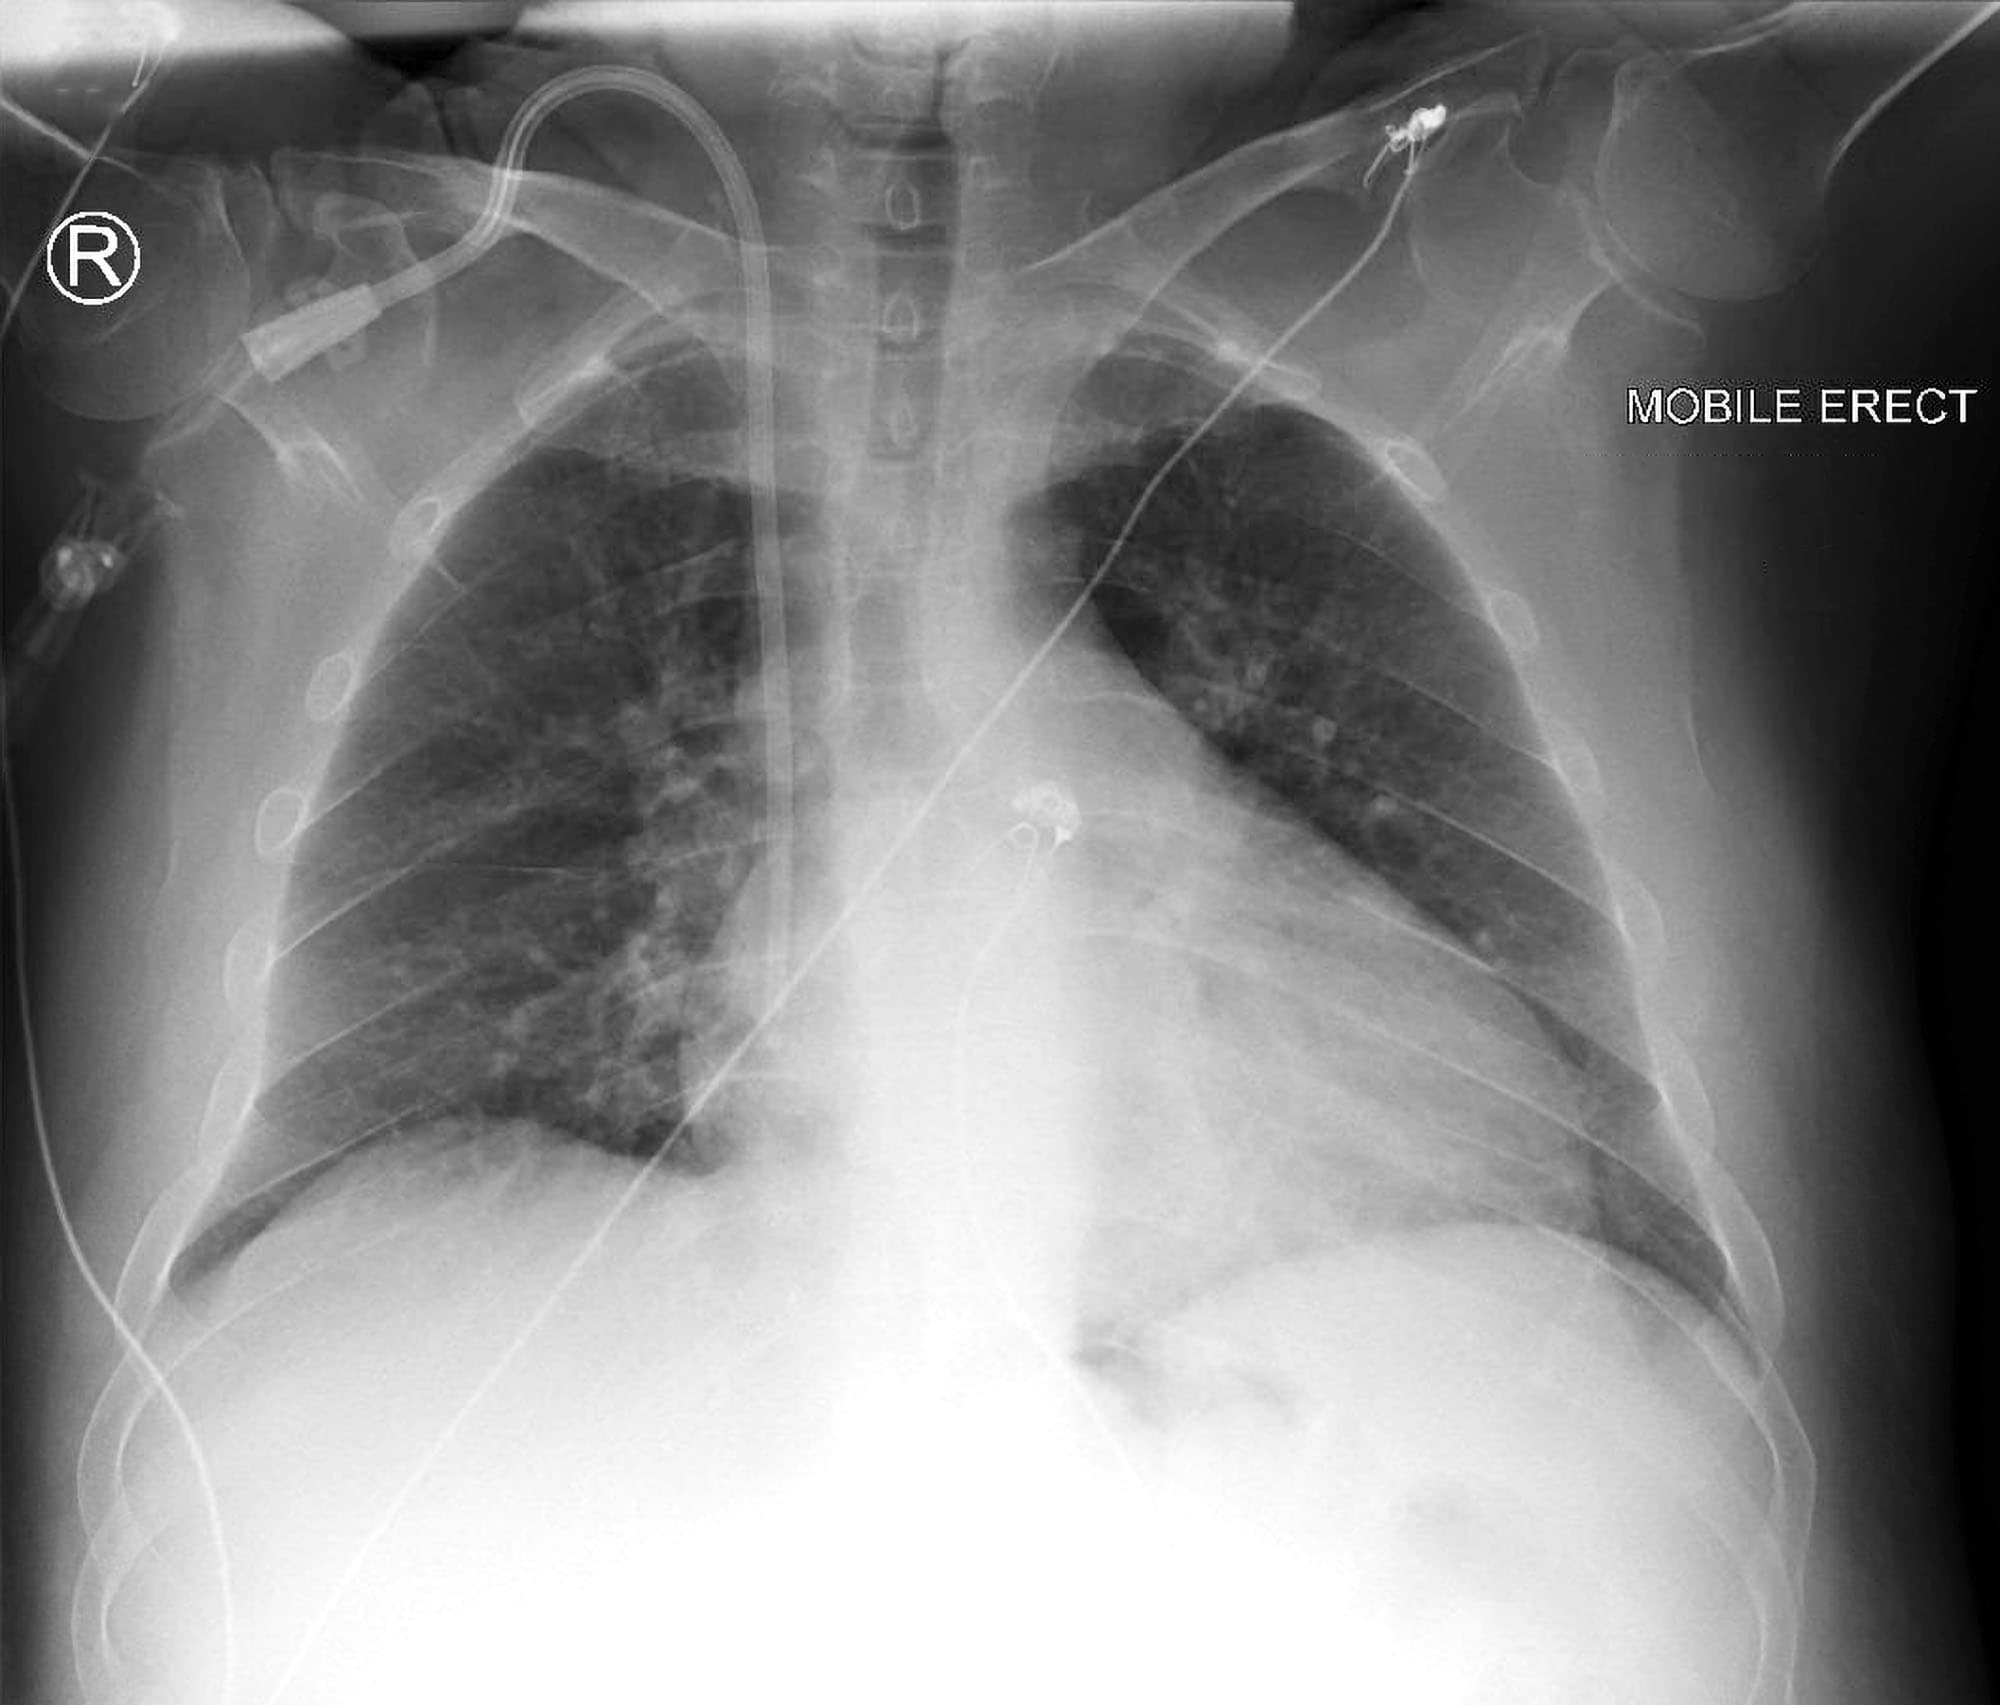 hickman catheter x ray